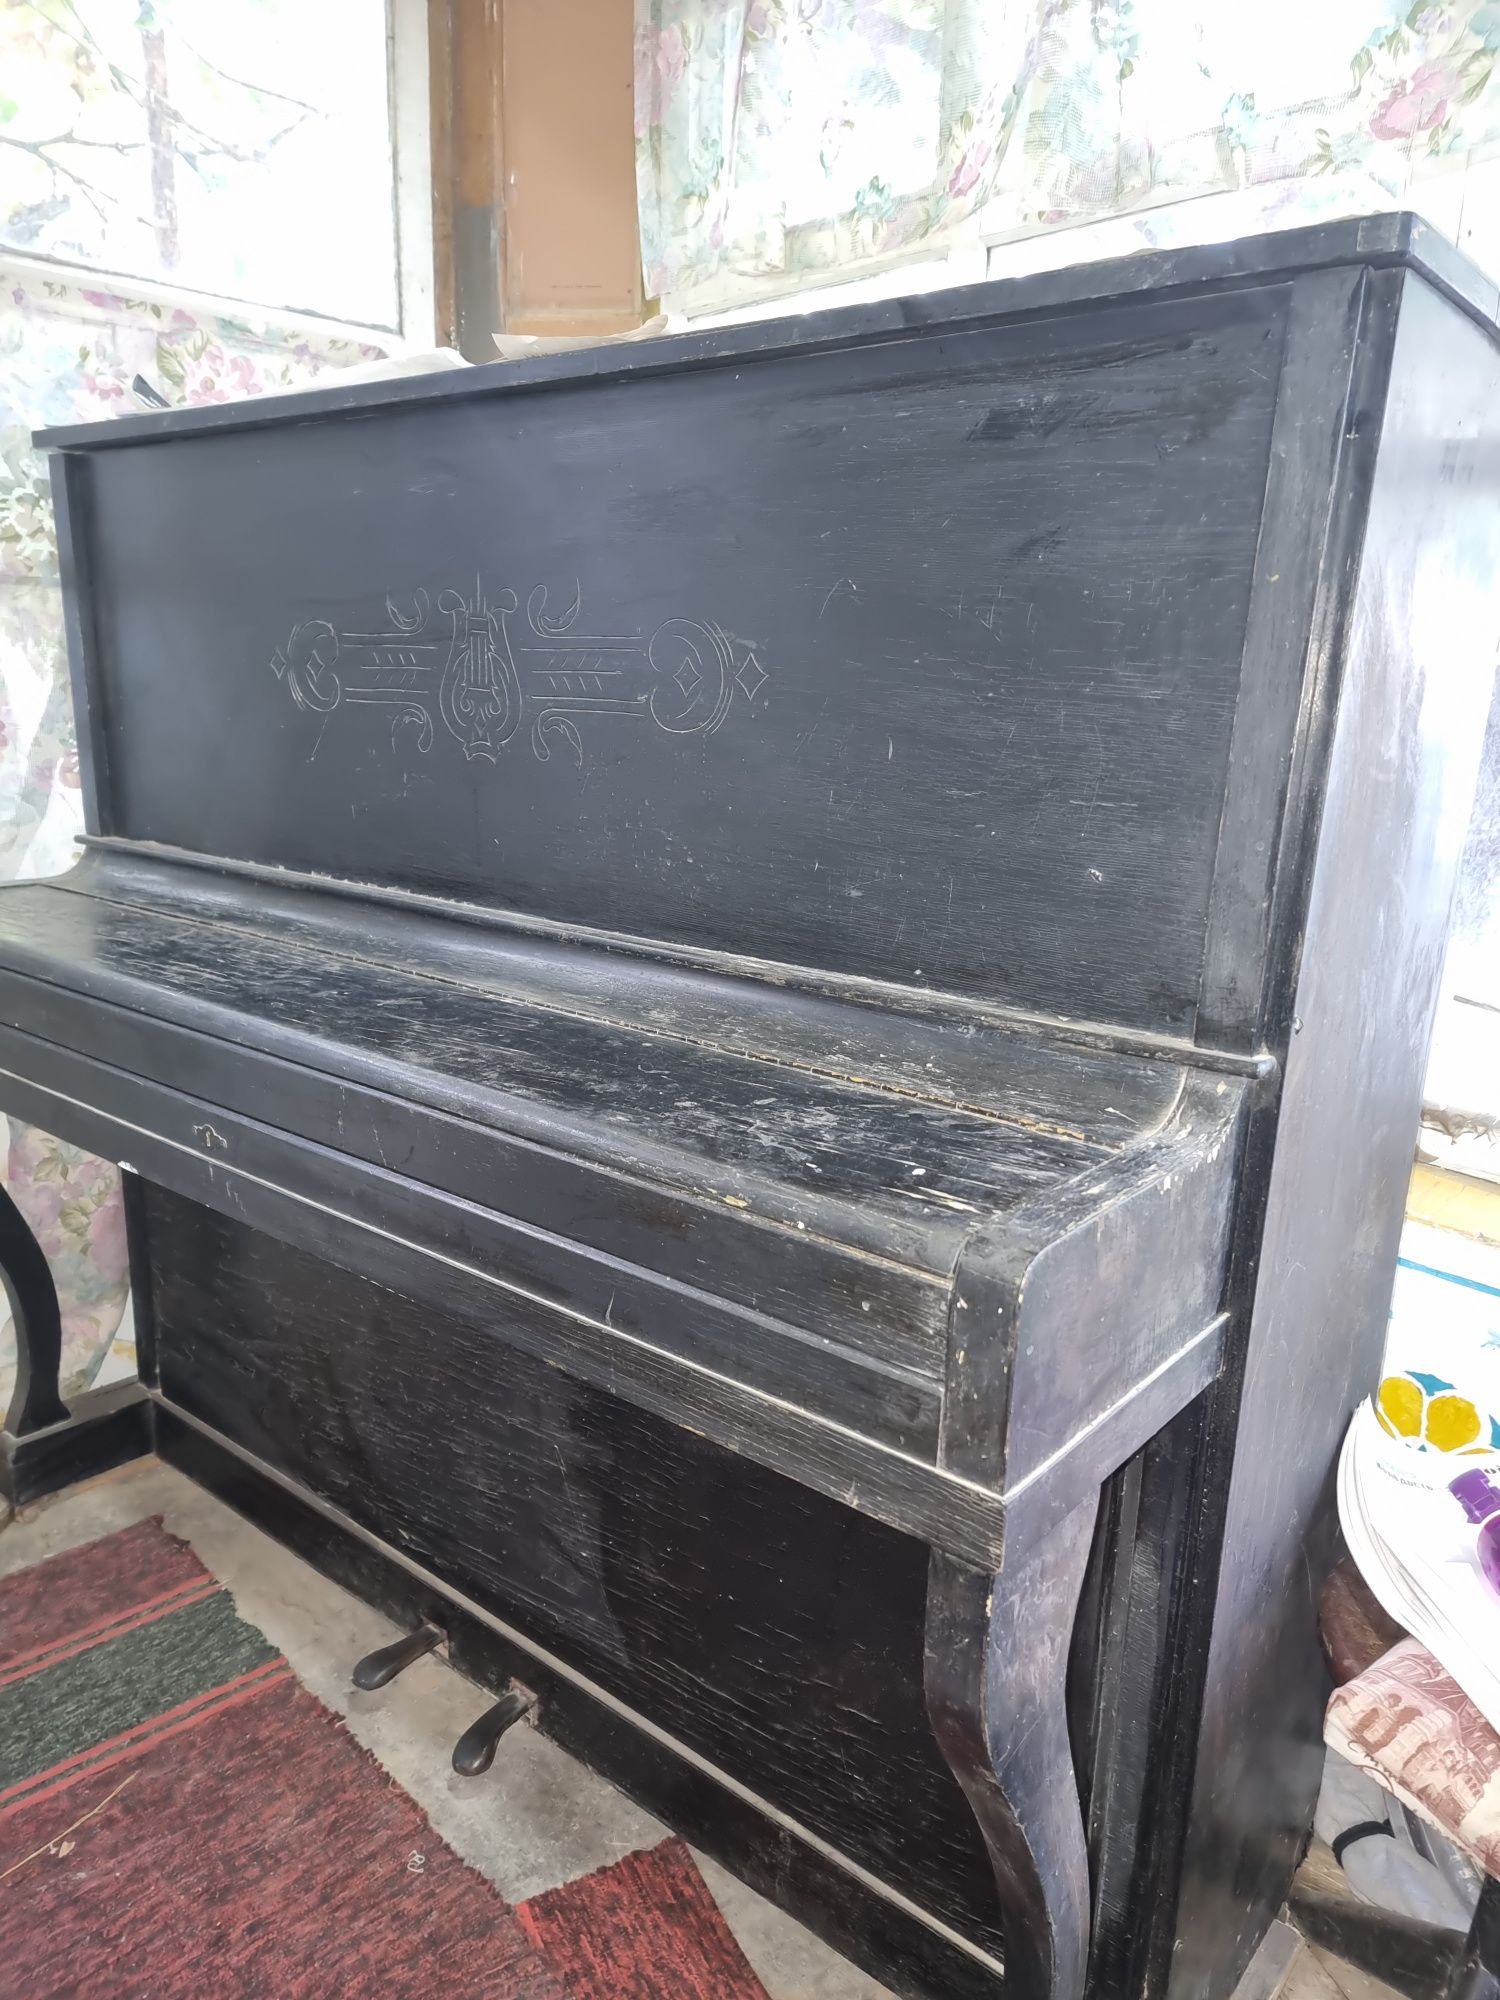 Продаётся пианино